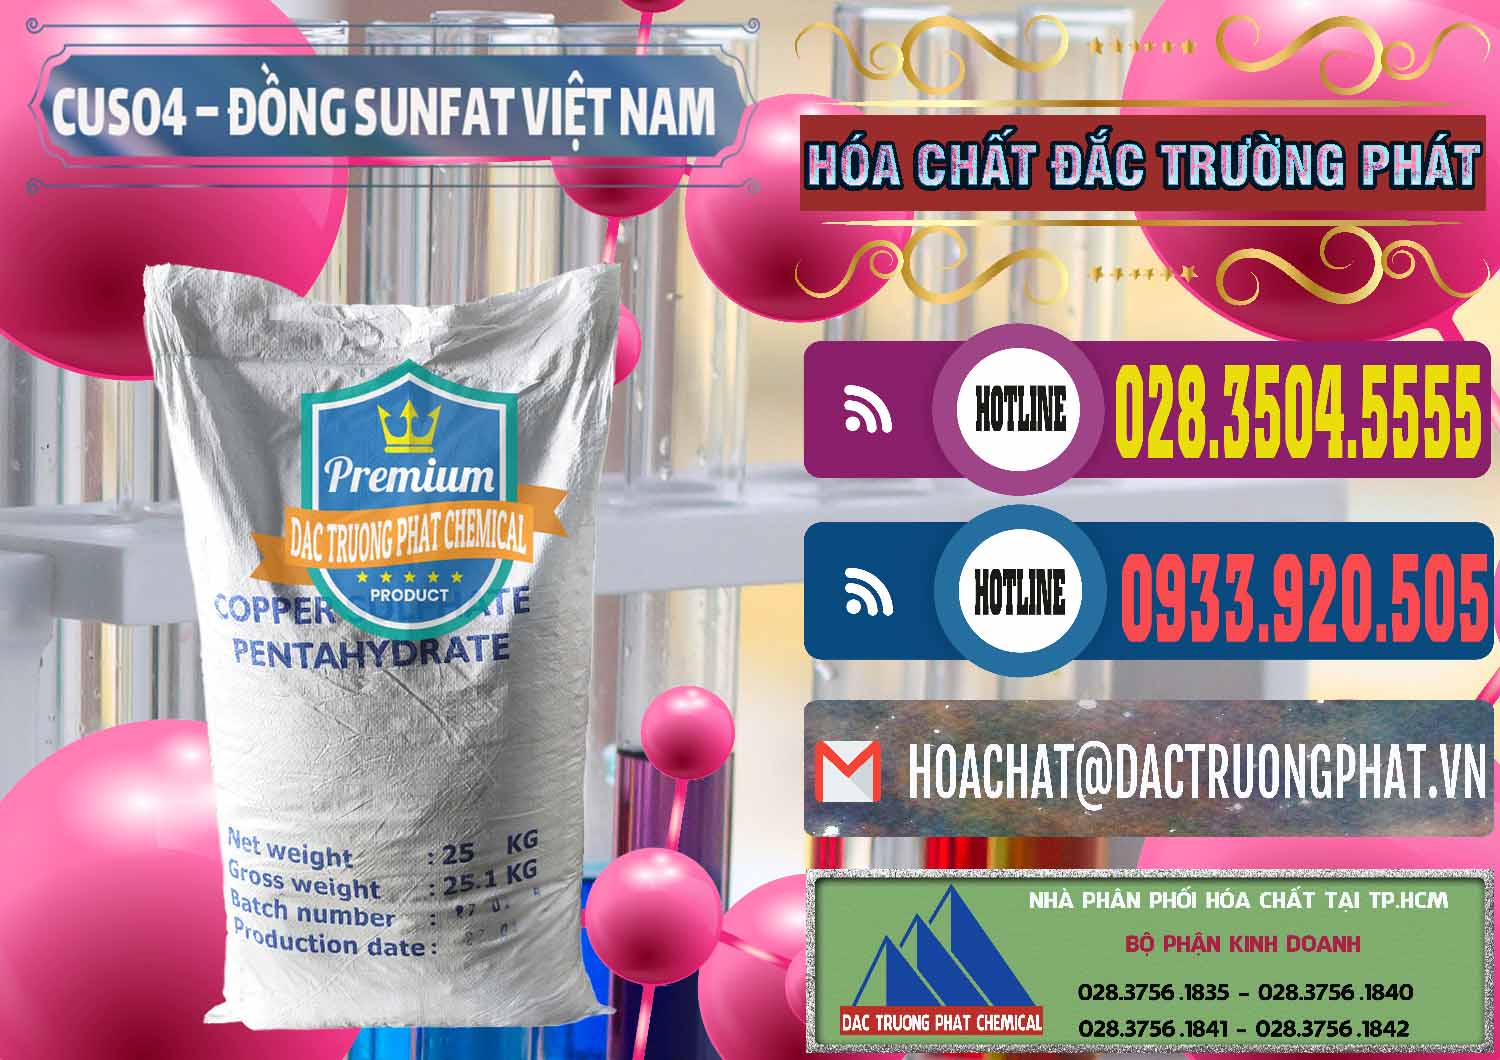 Nơi chuyên phân phối và kinh doanh CuSO4 – Đồng Sunfat Dạng Bột Việt Nam - 0196 - Cty phân phối & bán hóa chất tại TP.HCM - muabanhoachat.com.vn